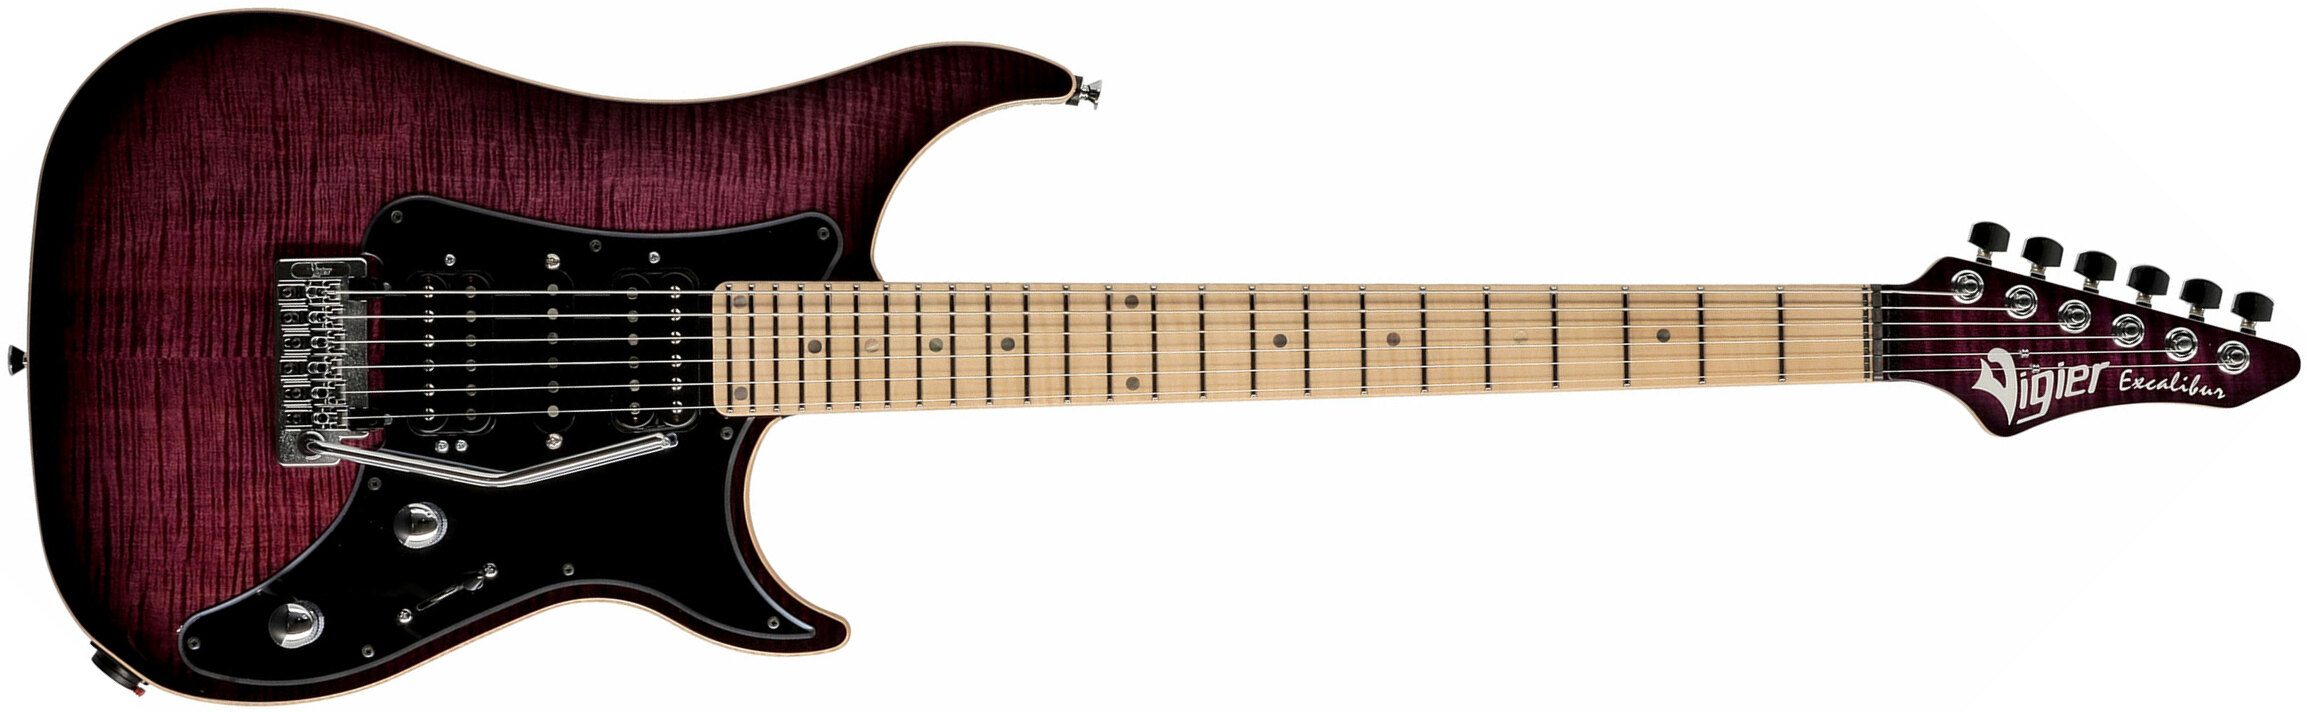 Vigier Excalibur Special Hsh Trem Mn - Mysterious Purple - Guitarra eléctrica de doble corte - Main picture